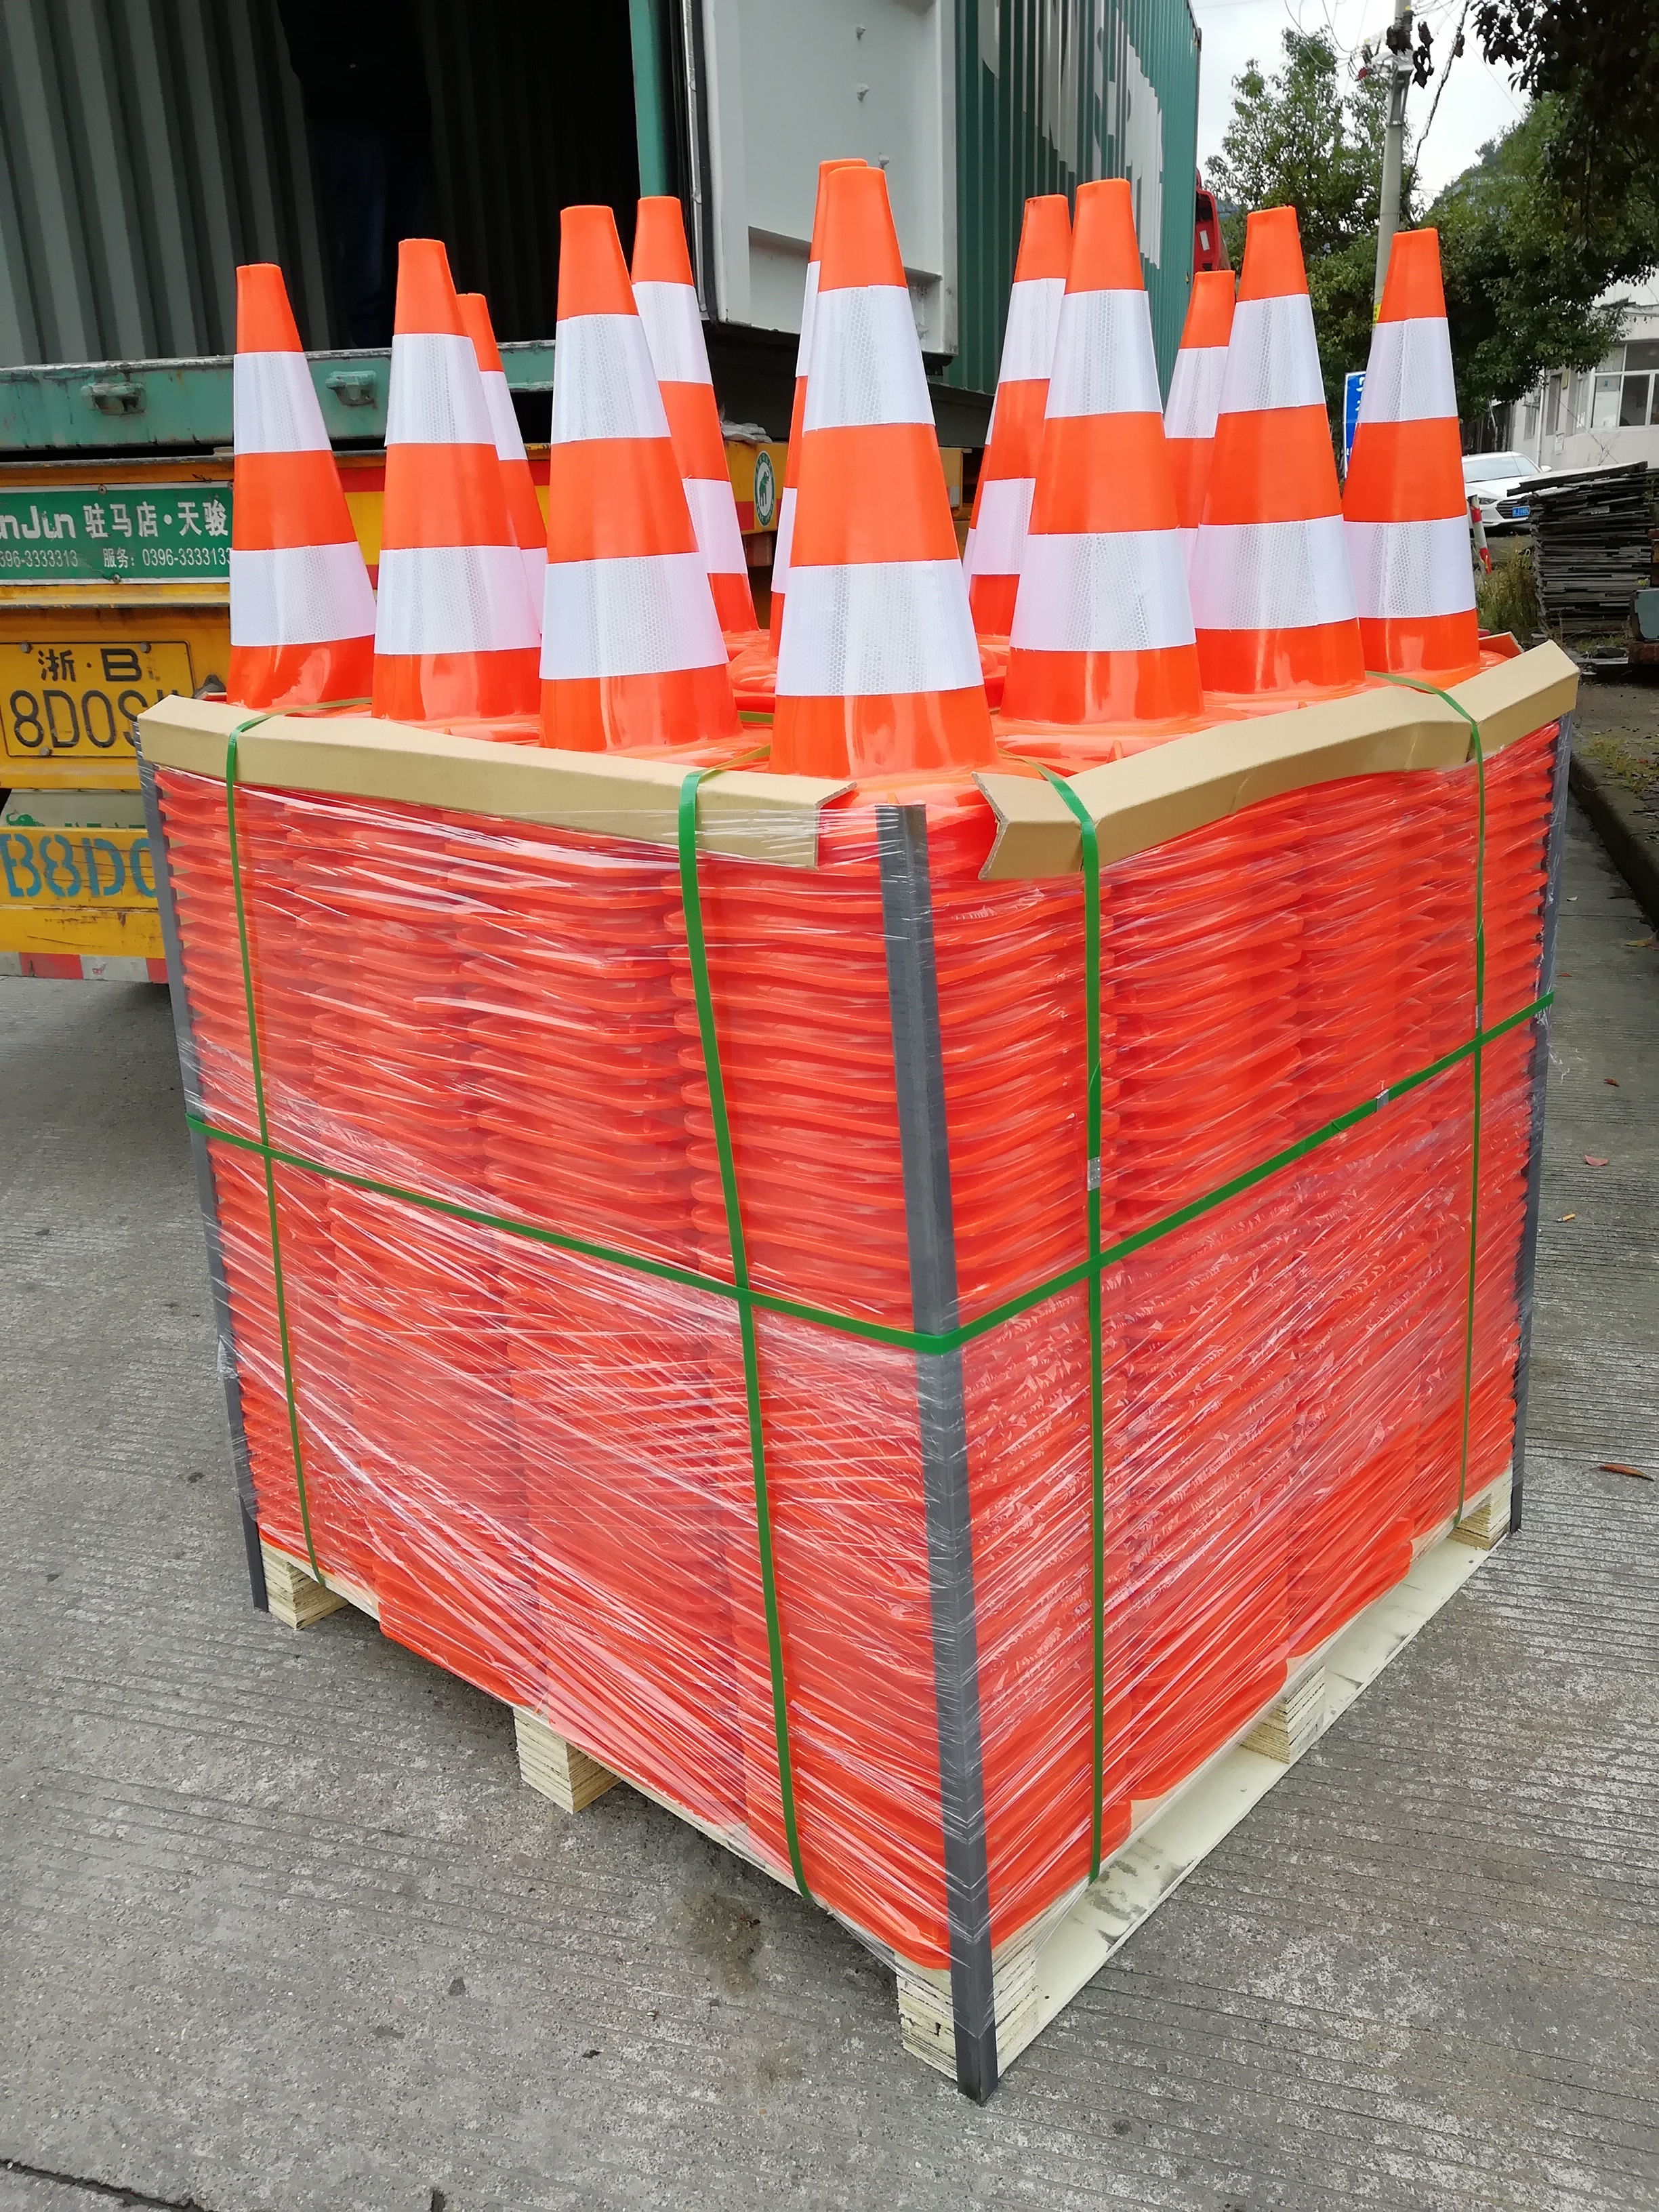 47cm 0.9kg All Orange PVC Cone